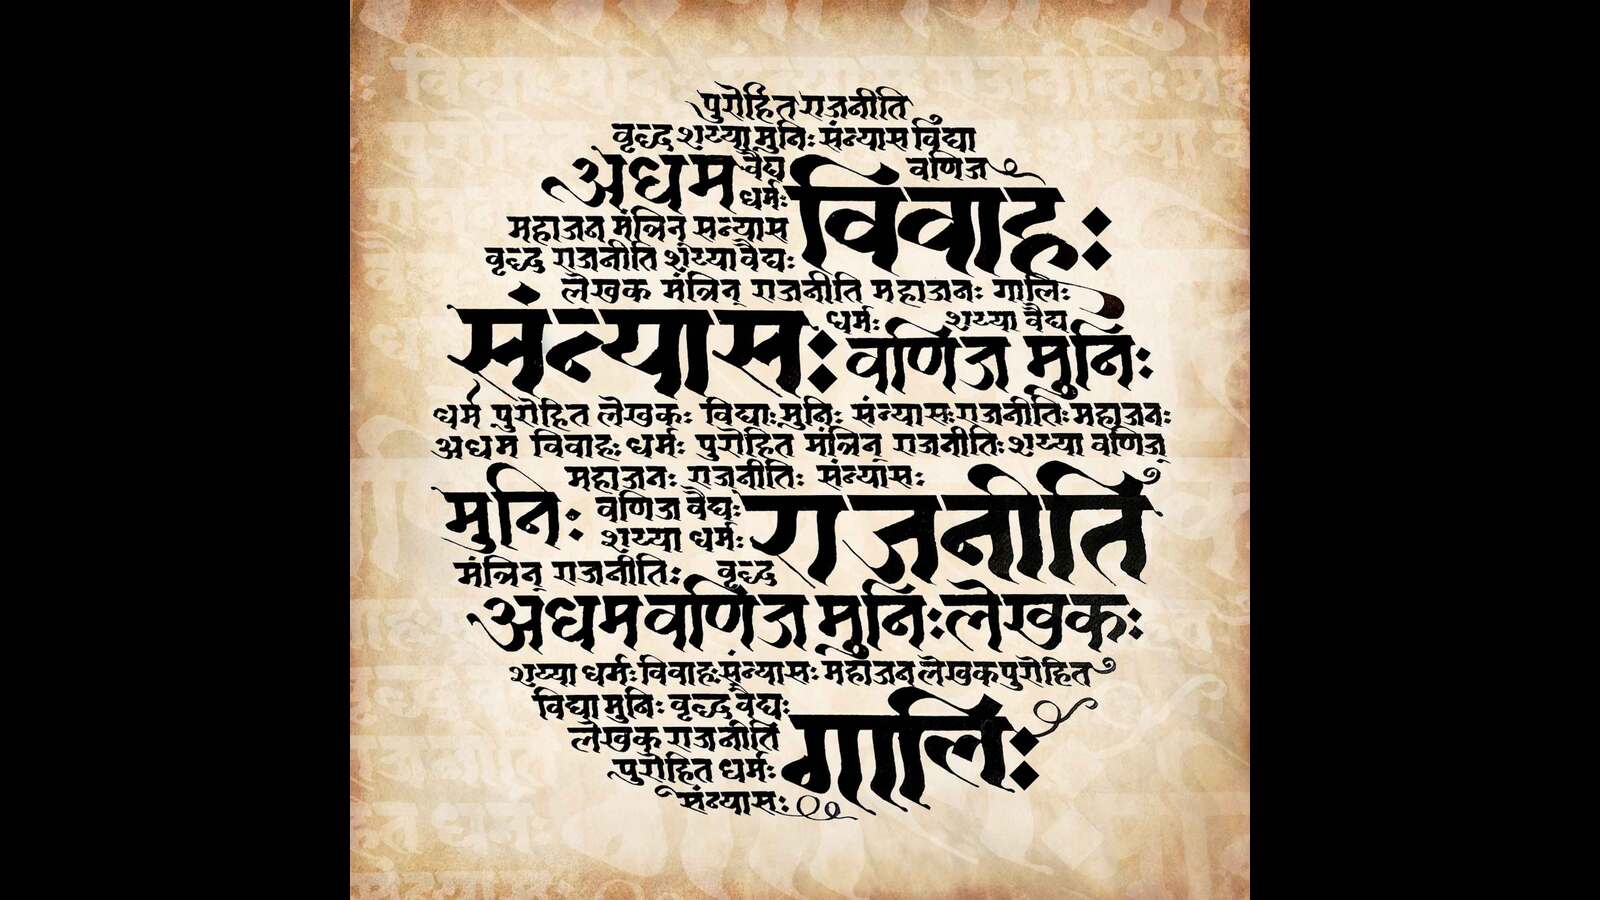 sanskrit words in tamil language